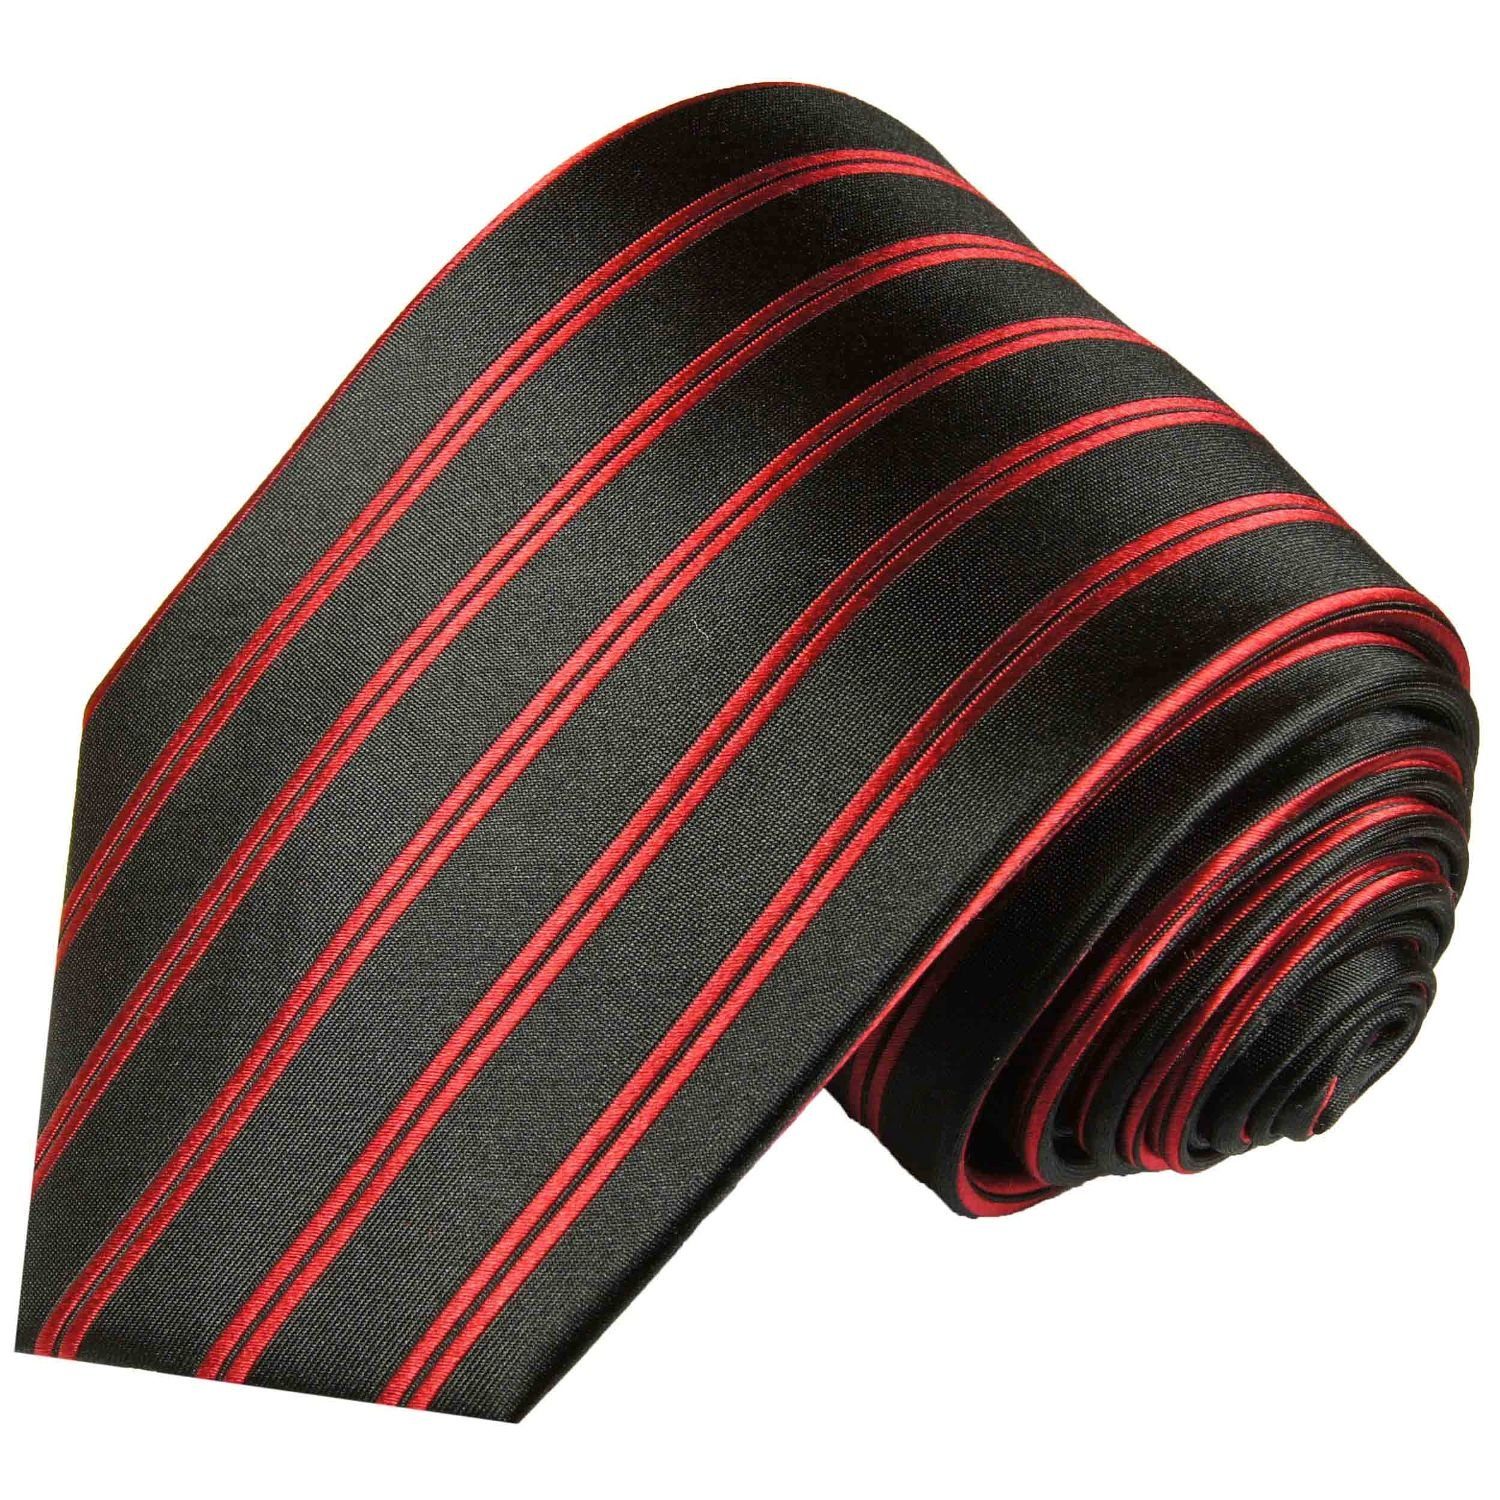 Paul Malone Krawatte Moderne Herren Seidenkrawatte gestreift 100% Seide Schmal (6cm), rot schwarz 988